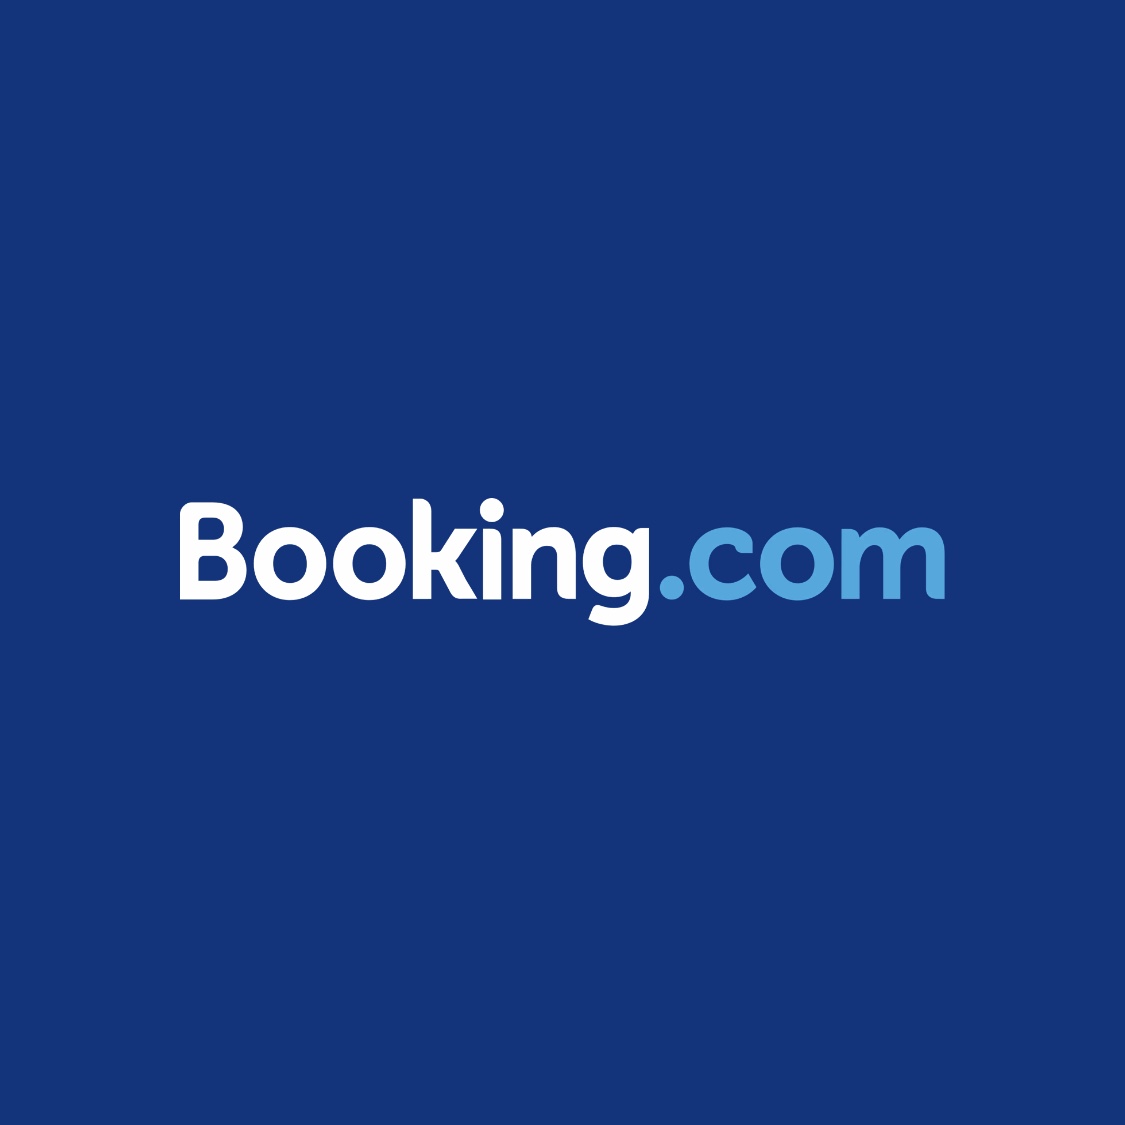 Booking.com － ブッキングドットコムでキャンセル不可のホテルを無料でキャンセルした話 – We Travel life